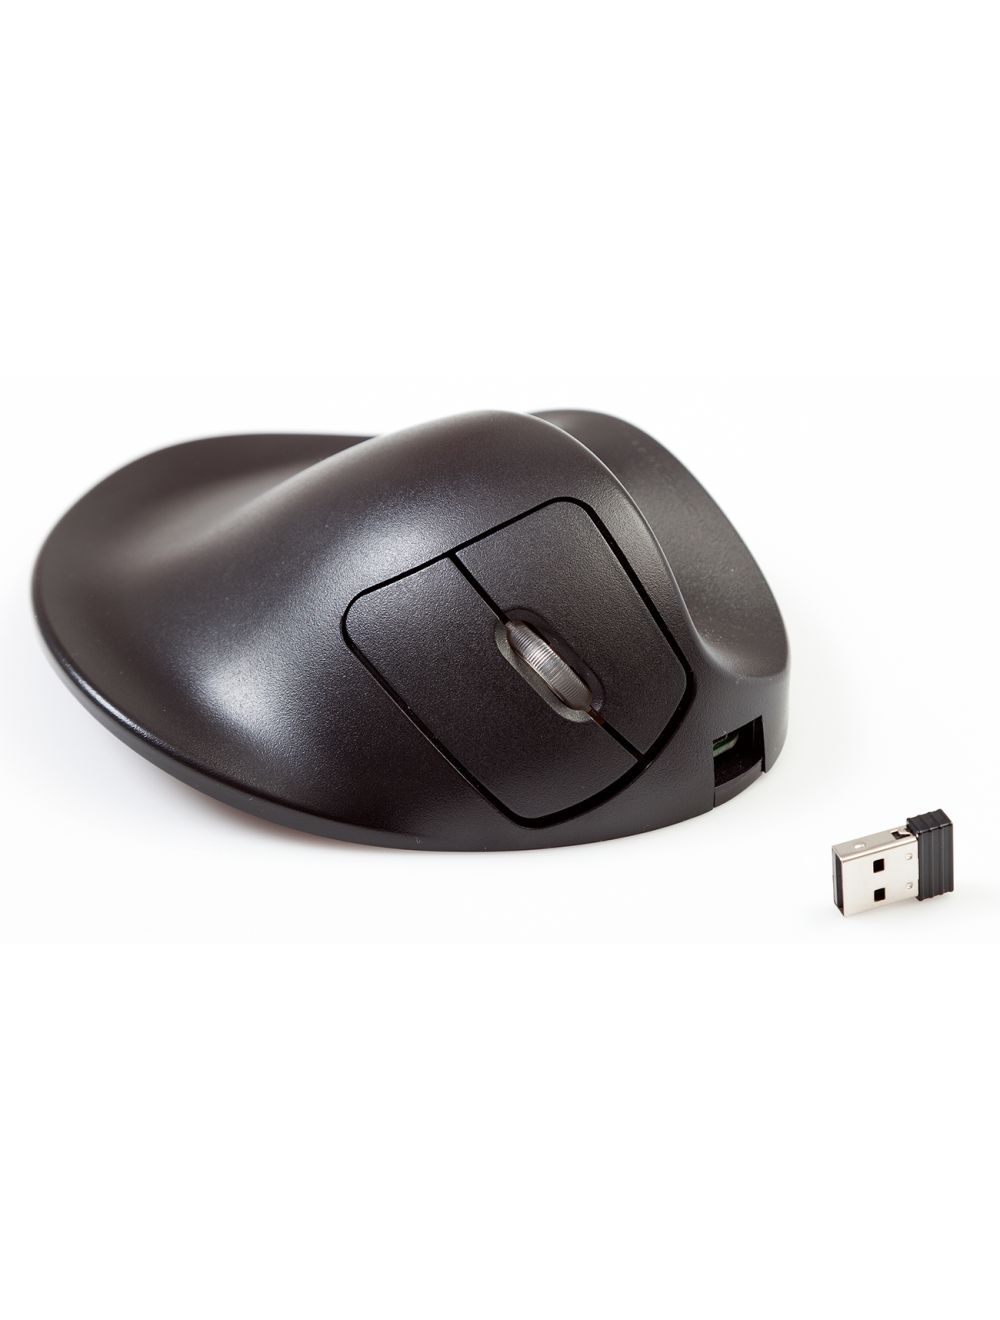 Ergonomic Mouse - Hippus HandShoeMouse Wireless